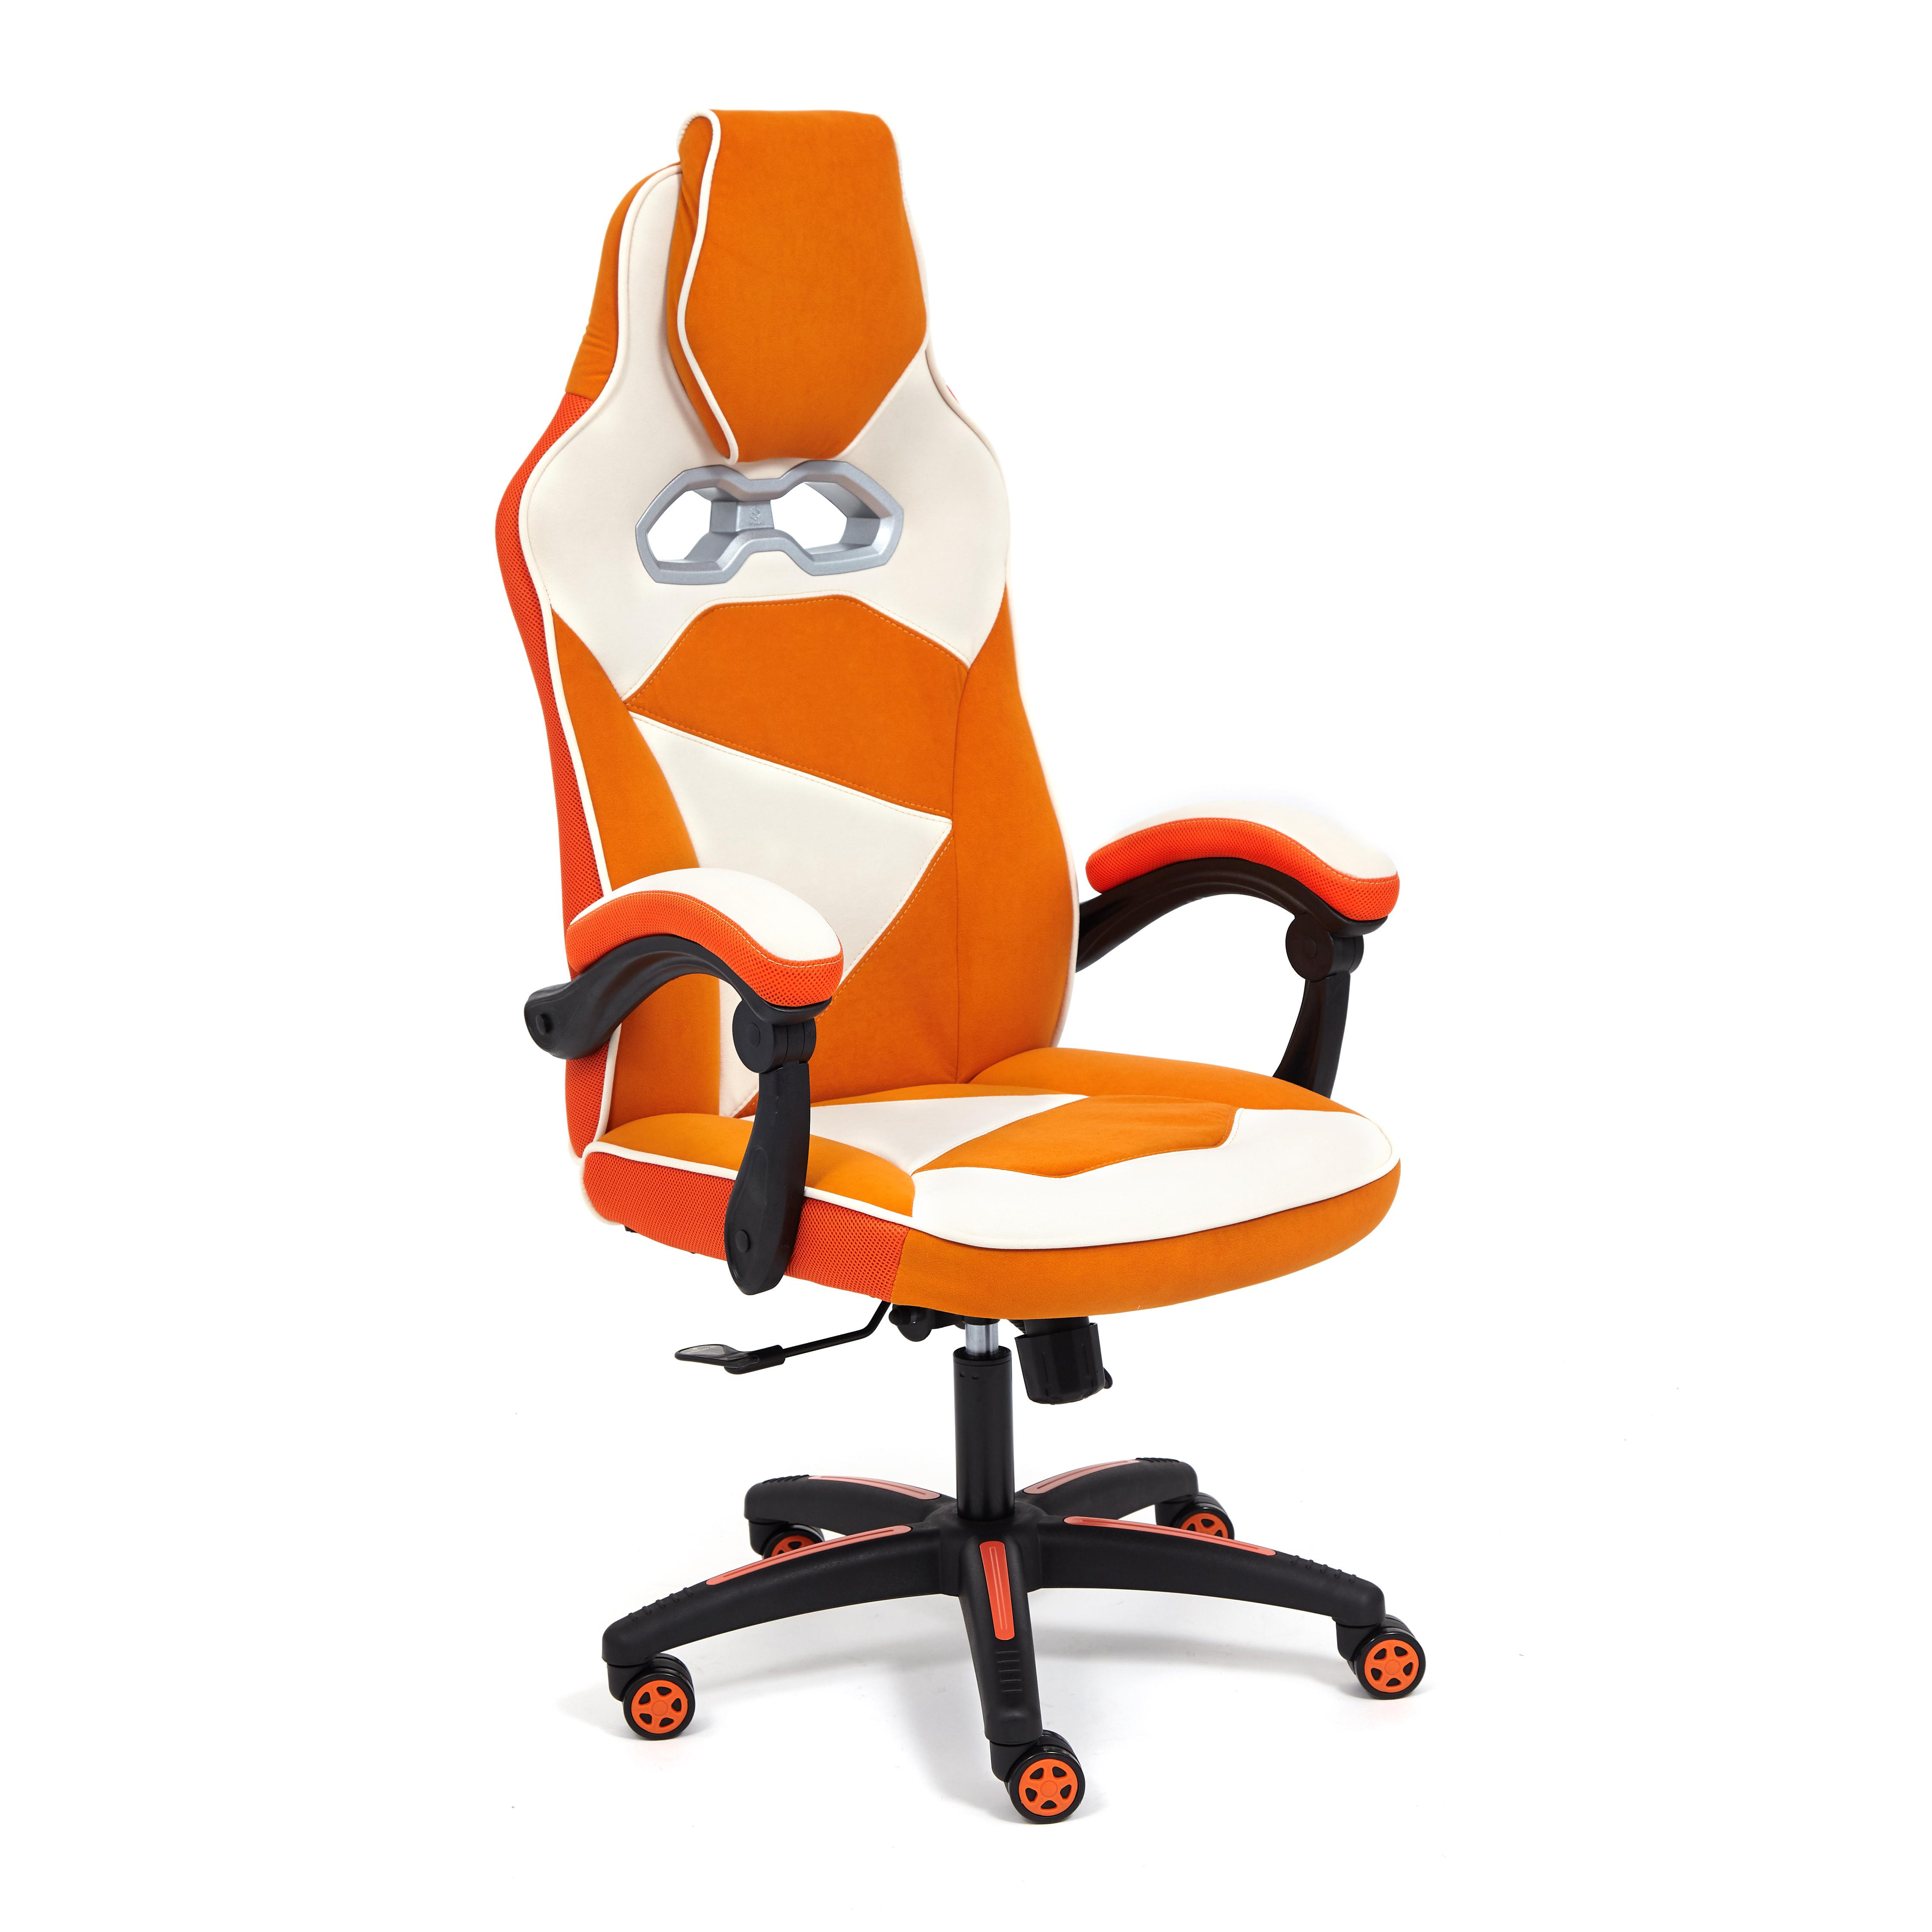 Кресло компьютерное ТС 67х49х142 см флок молочный/оранжевый